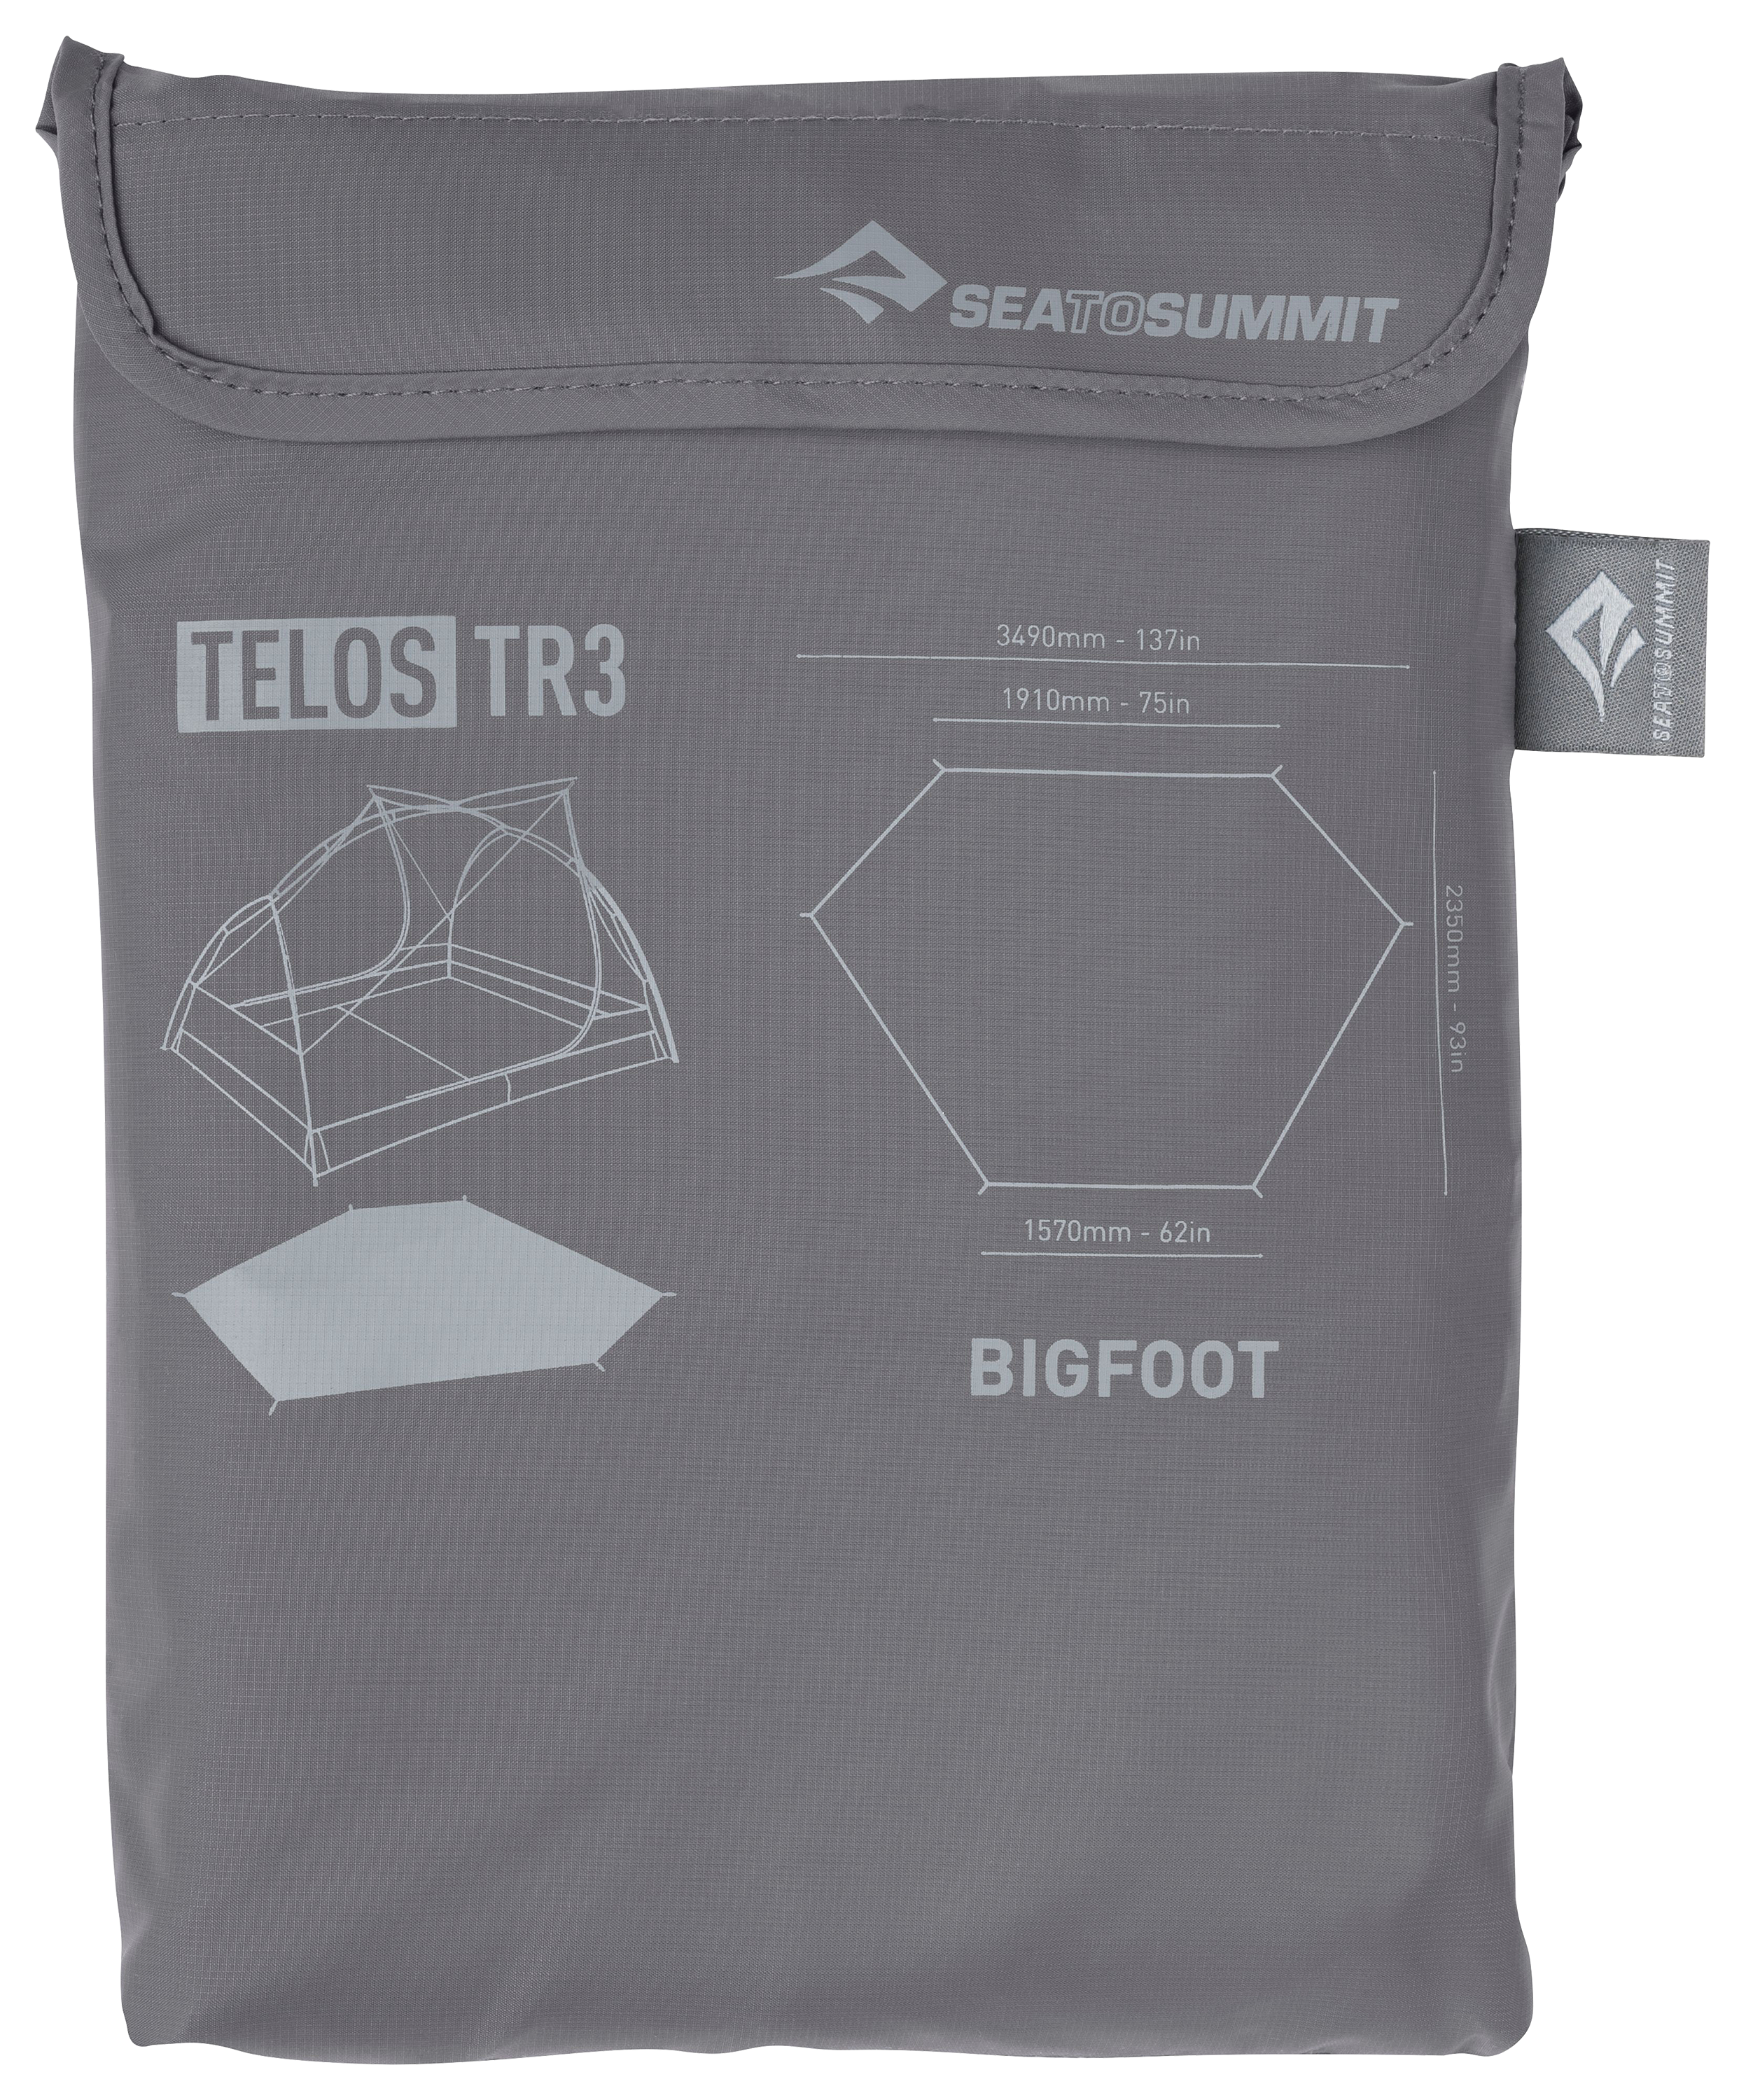 Sea to Summit Telos BigFoot Footprint - 93""L x 75""W - Telos TR3 Tent